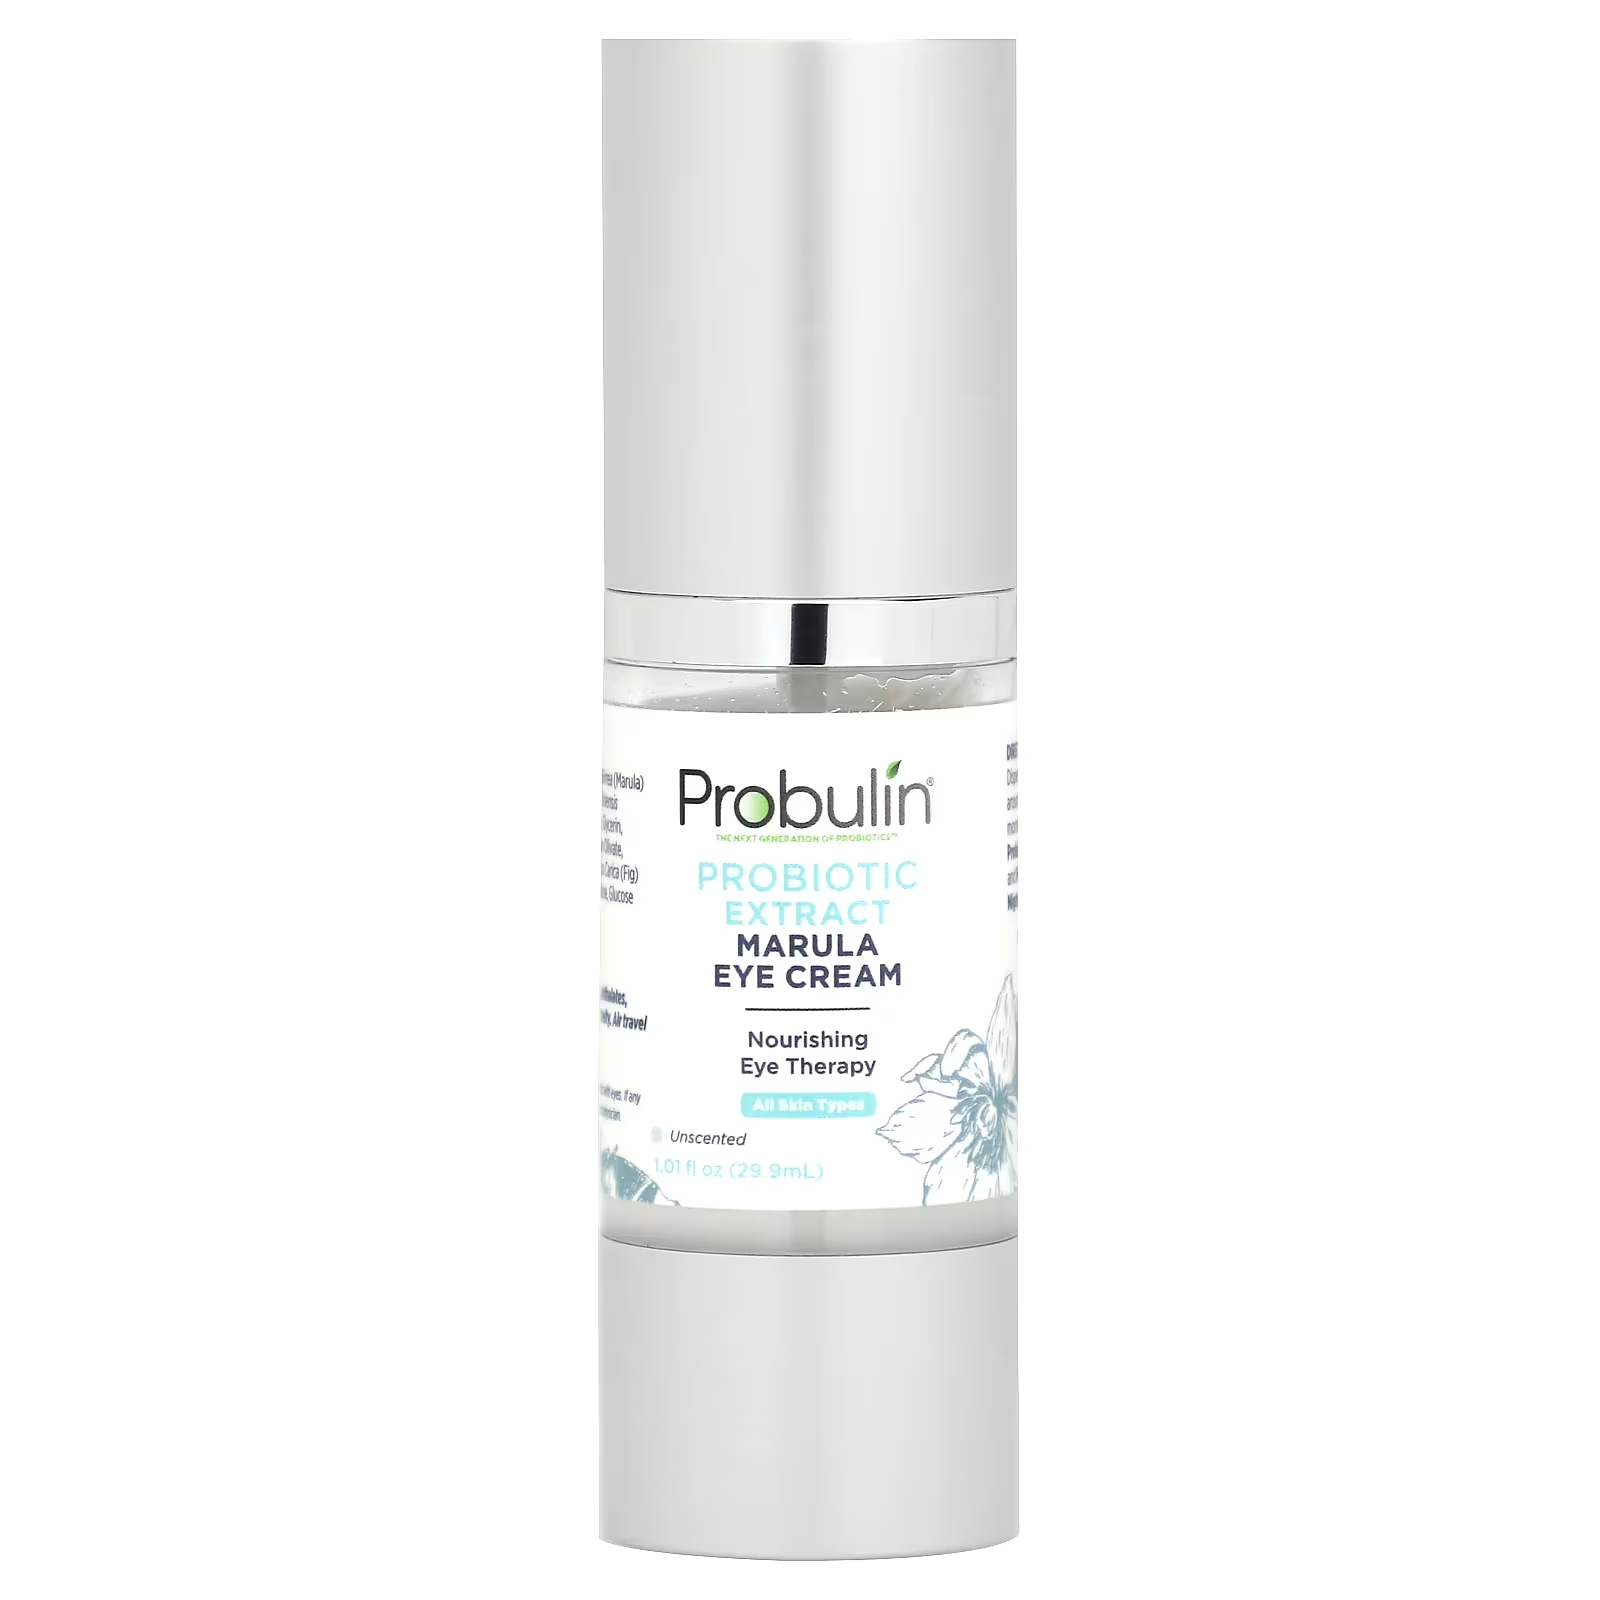 цена Пробиотический экстракт пробулина Marula, крем для глаз без запаха, 1,01 жидкая унция (29,9 мл) Probulin